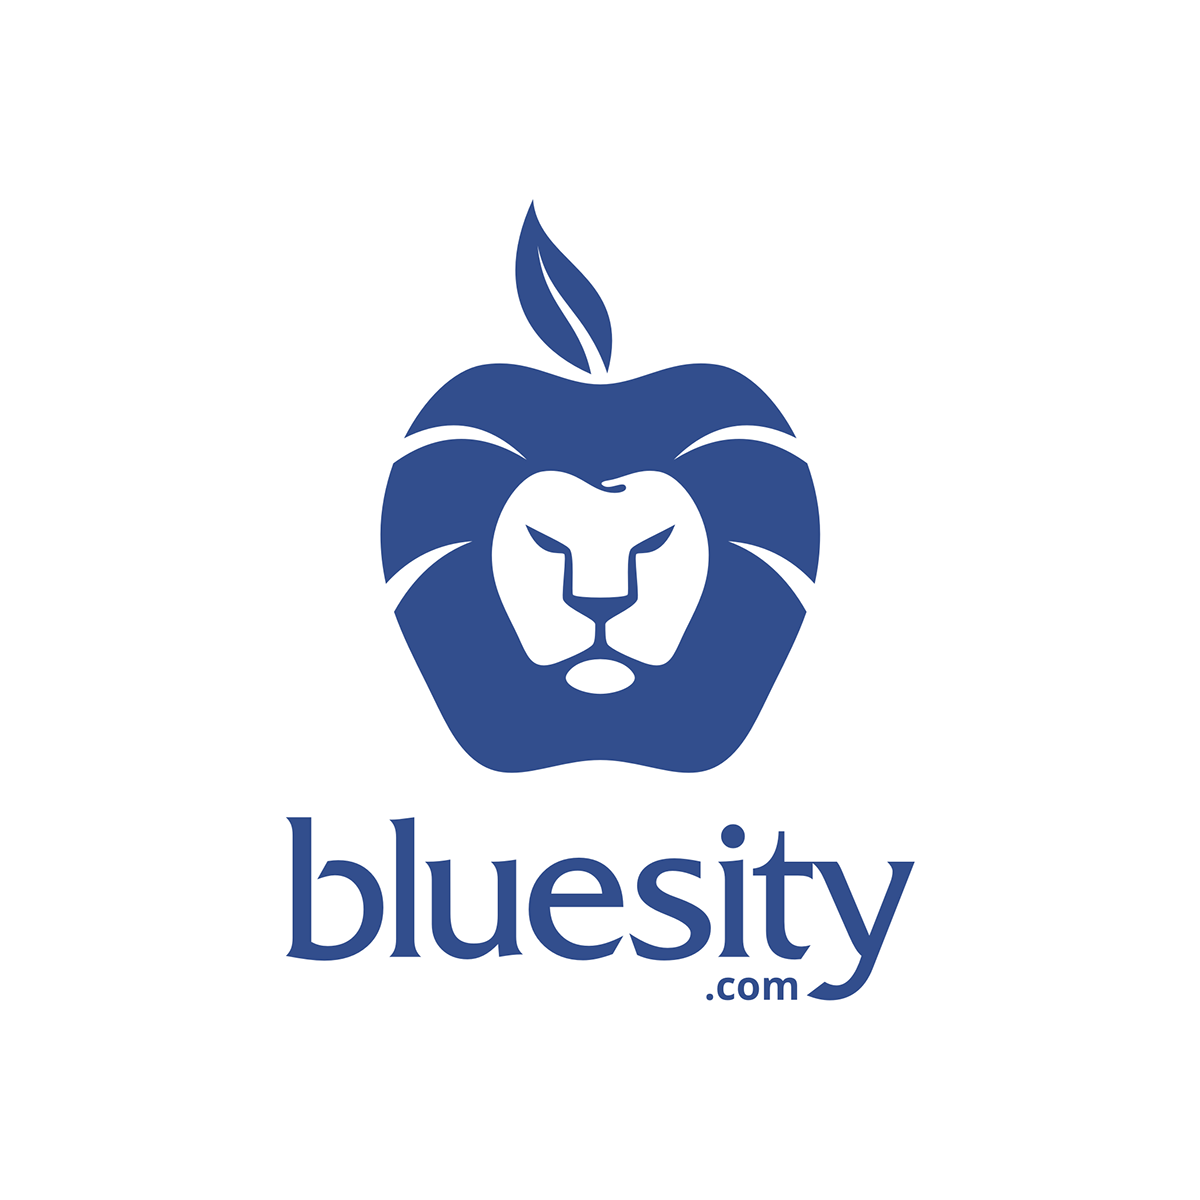 Bluesity blue city blue city malang logo Icon Clothing lion apple ngalam Leo